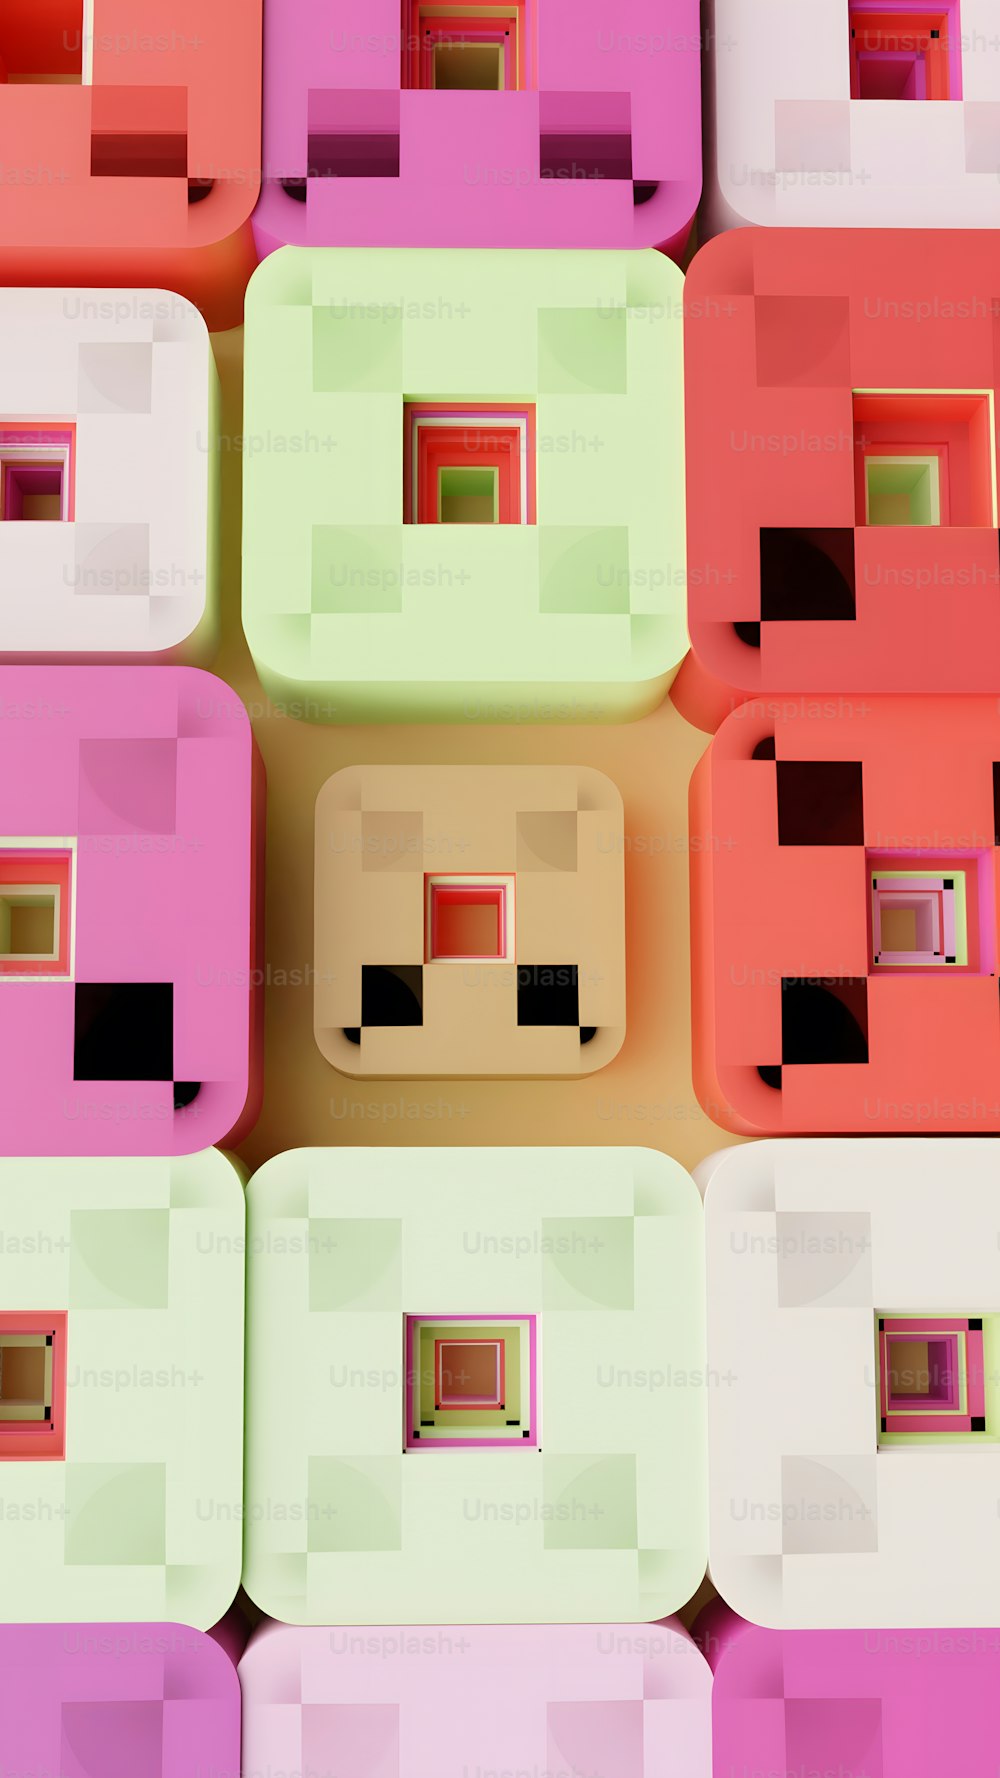 un groupe de blocs de différentes couleurs assis les uns à côté des autres